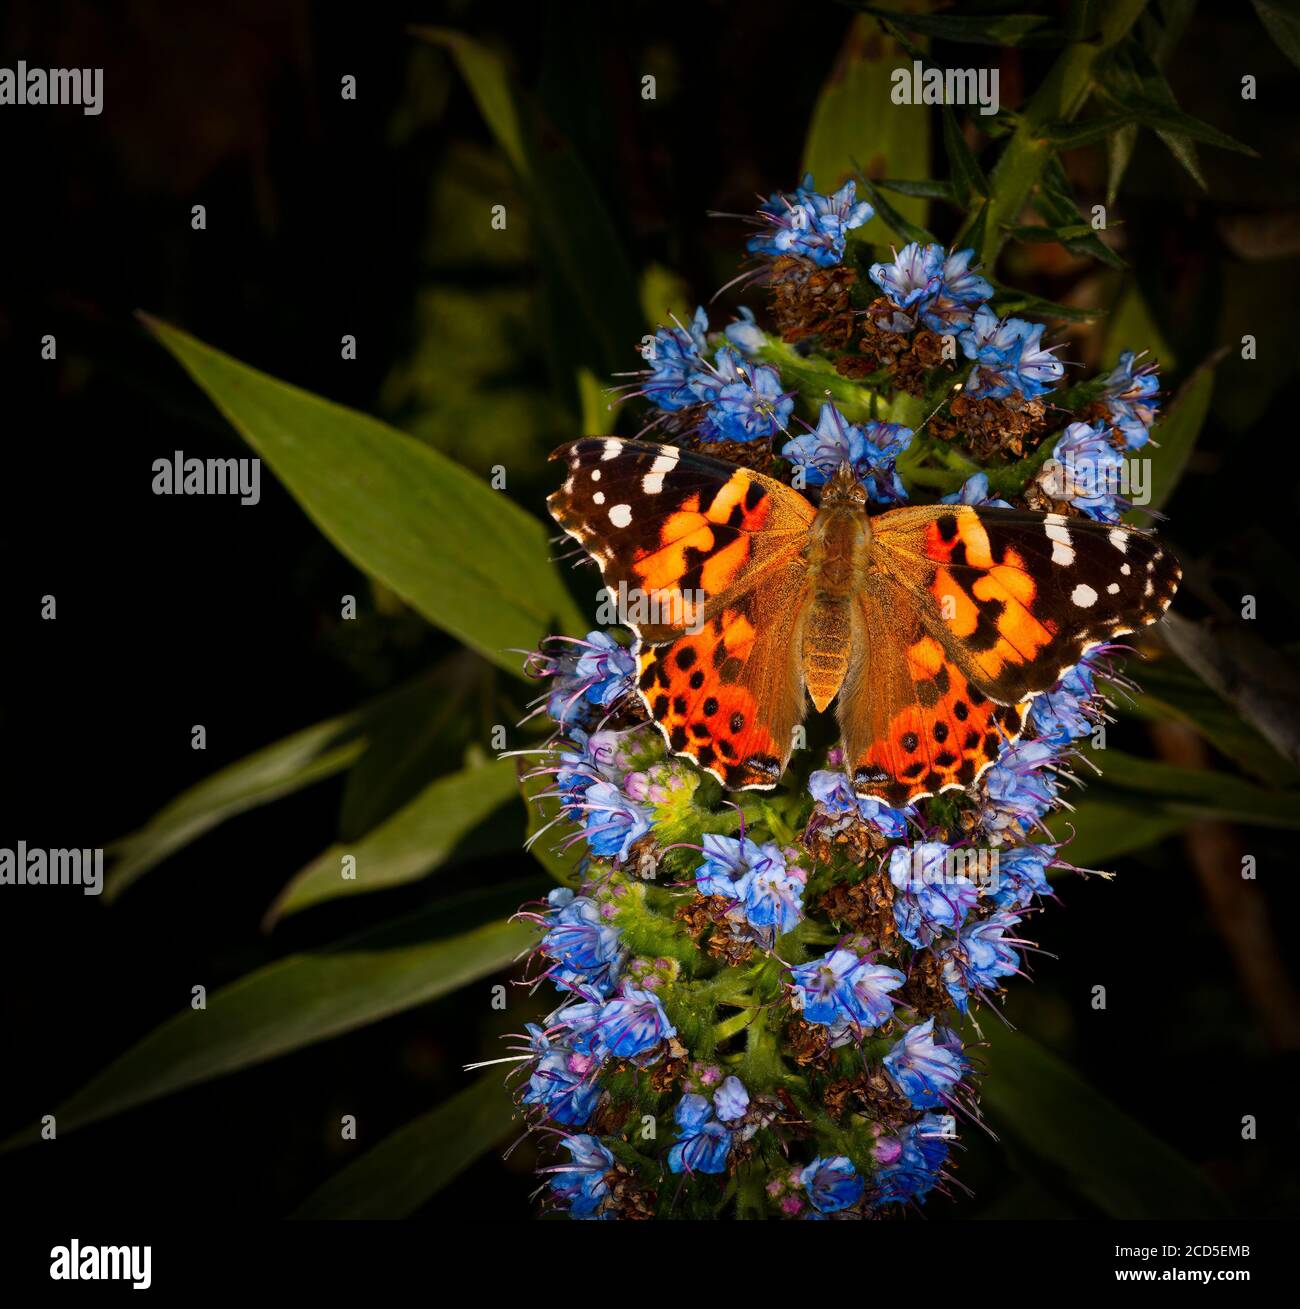 Photographie de la nature du papillon perching sur une fleur bleue Banque D'Images